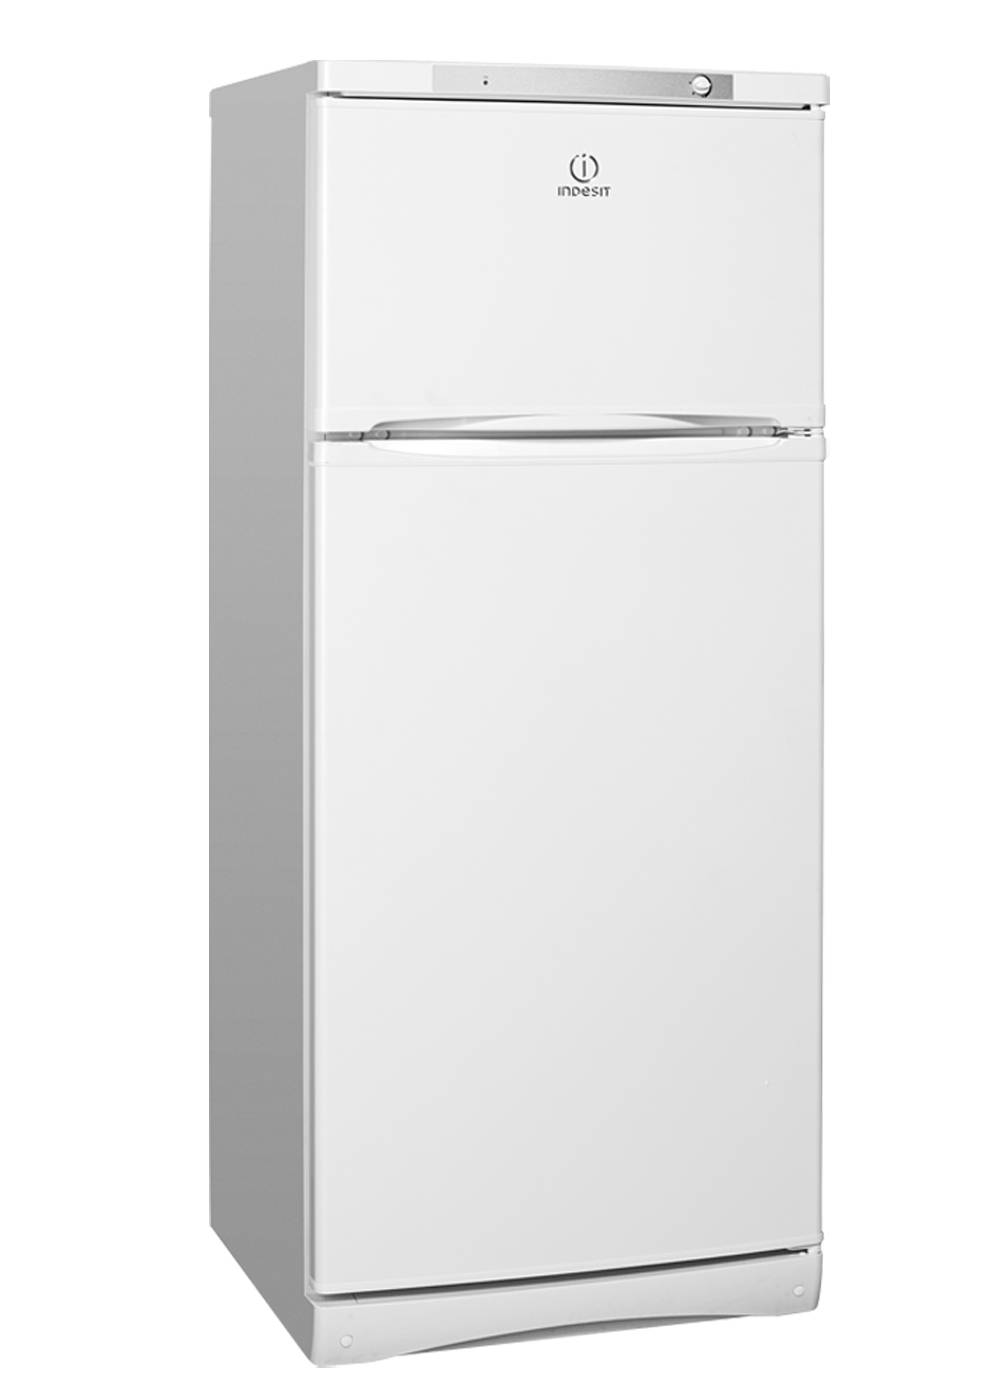 Холодильник индезит двухкамерный модели. Холодильник Индезит двухкамерный St 14510. Холодильник Индезит двухкамерный St 145.